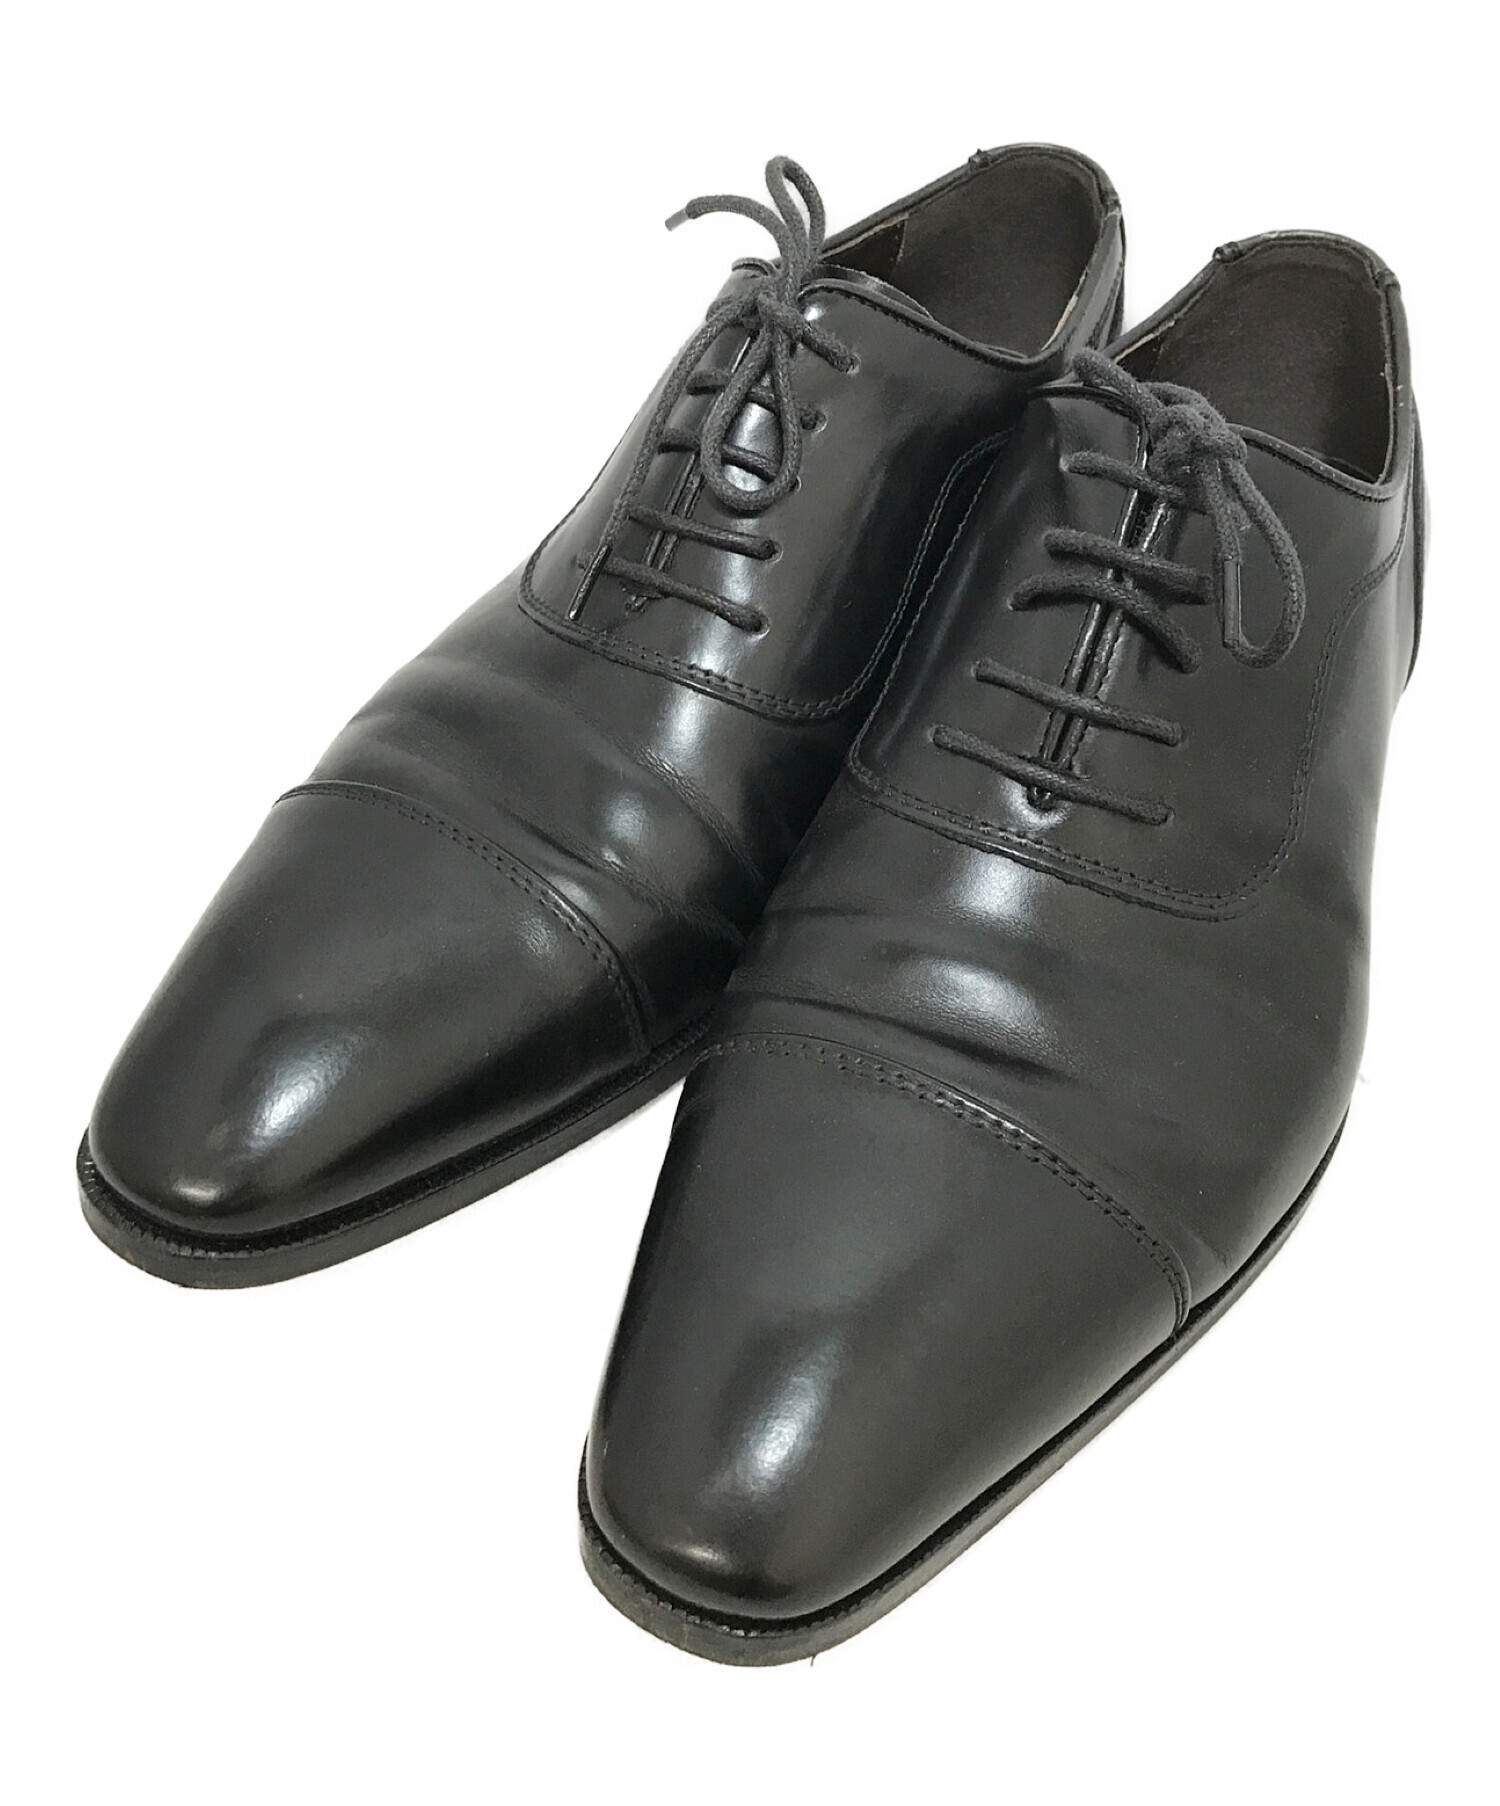 靴/シューズmadras MDL4047キップ革ストレートチップビジネス。黒色。25.5cm